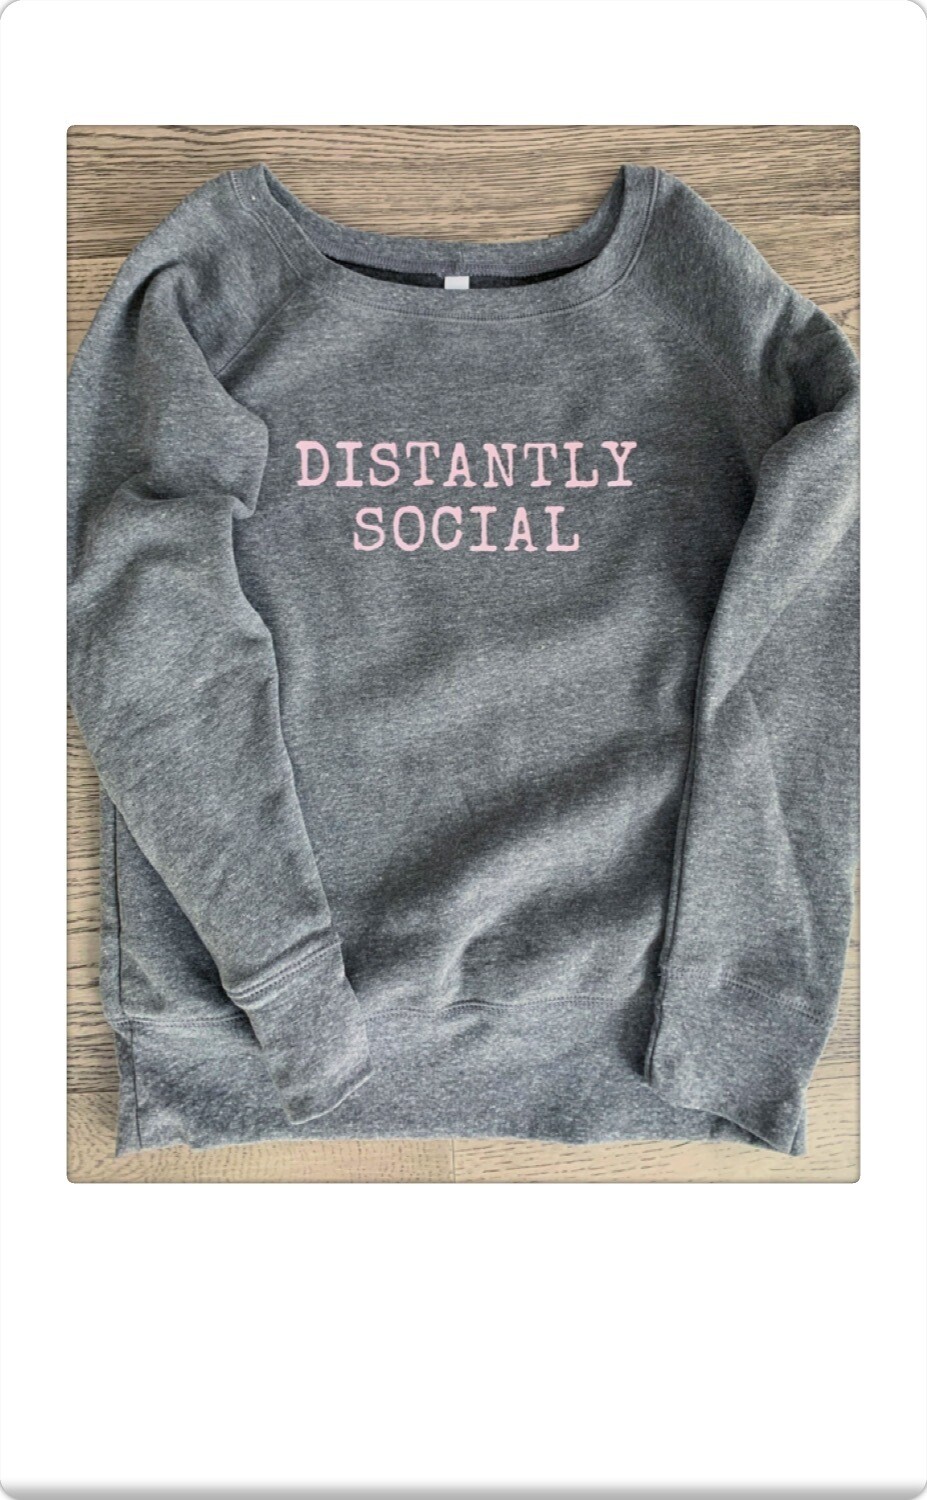 Distantly social sweatshirt